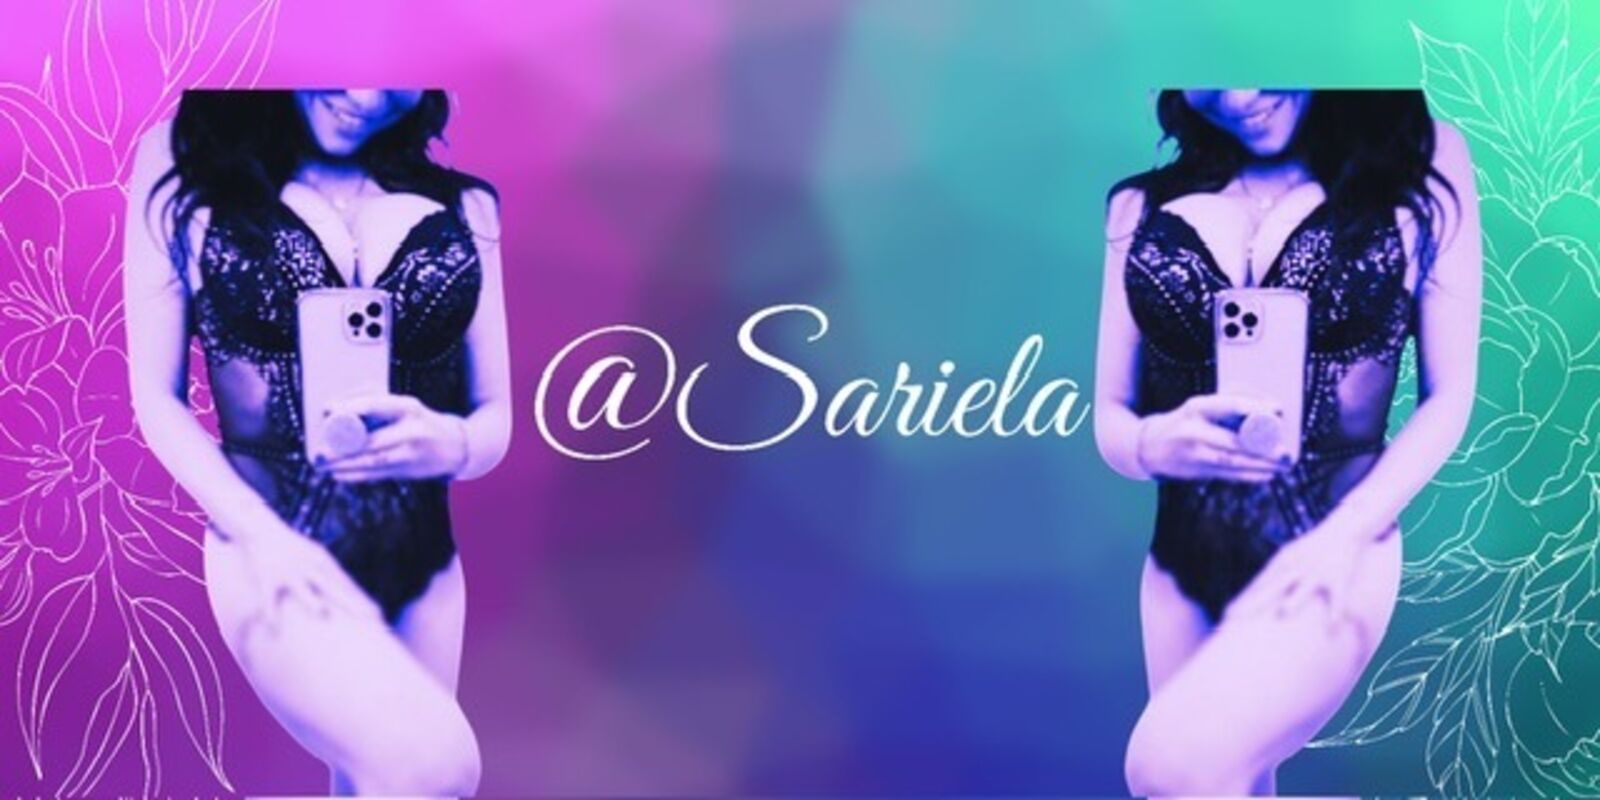 See Sariela profile